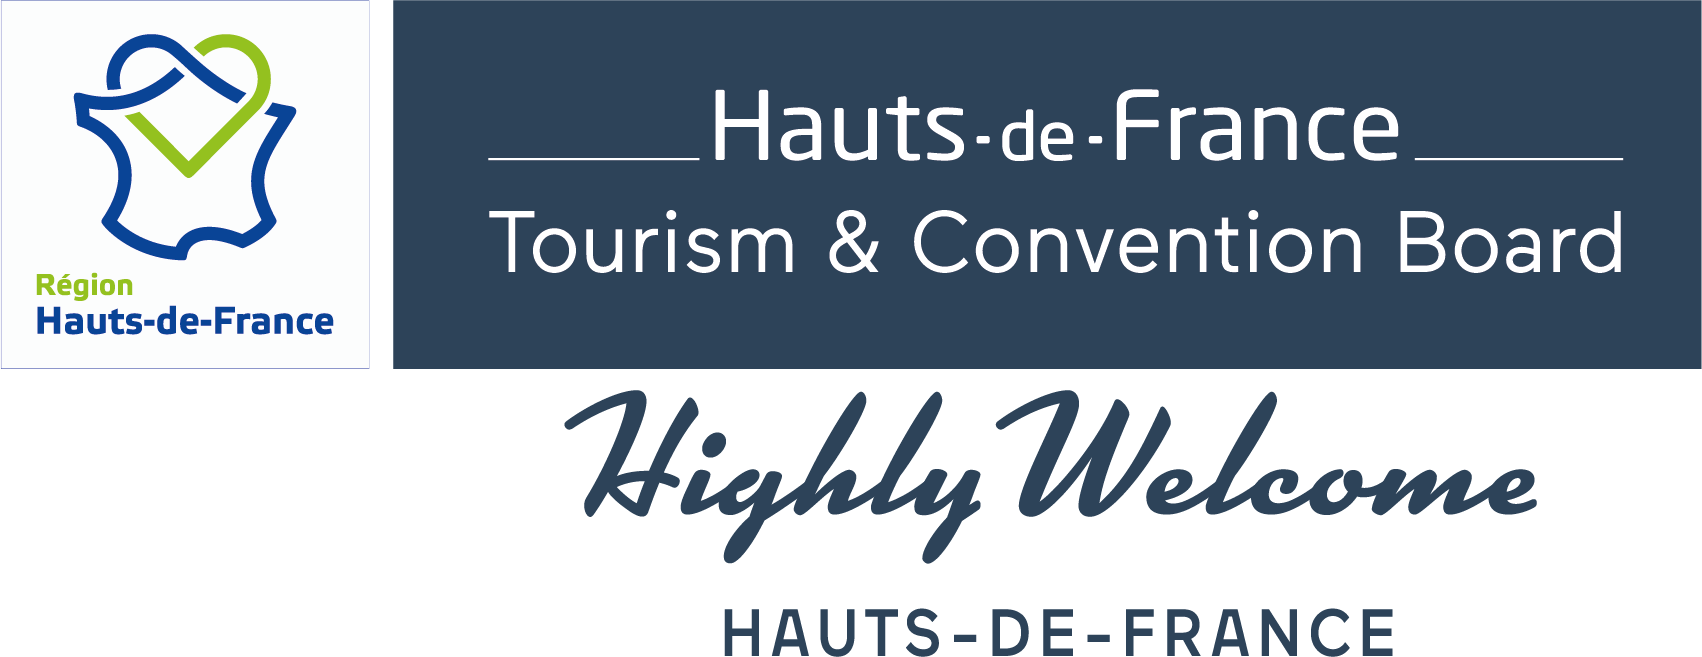 Hauts-de-France Tourism & Convention Board